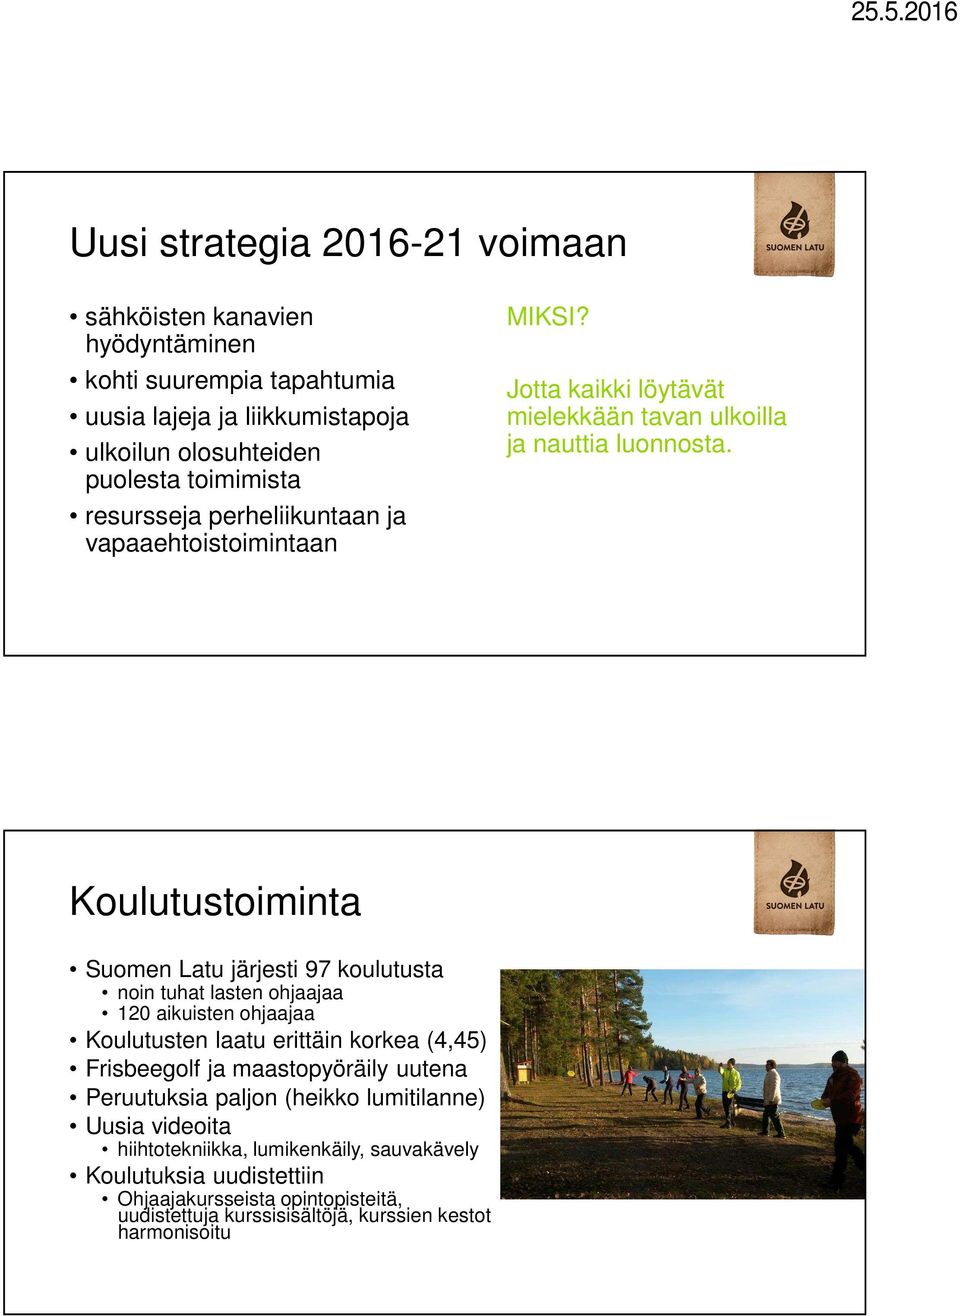 Koulutustoiminta Suomen Latu järjesti 97 koulutusta noin tuhat lasten ohjaajaa 120 aikuisten ohjaajaa Koulutusten laatu erittäin korkea (4,45) Frisbeegolf ja maastopyöräily